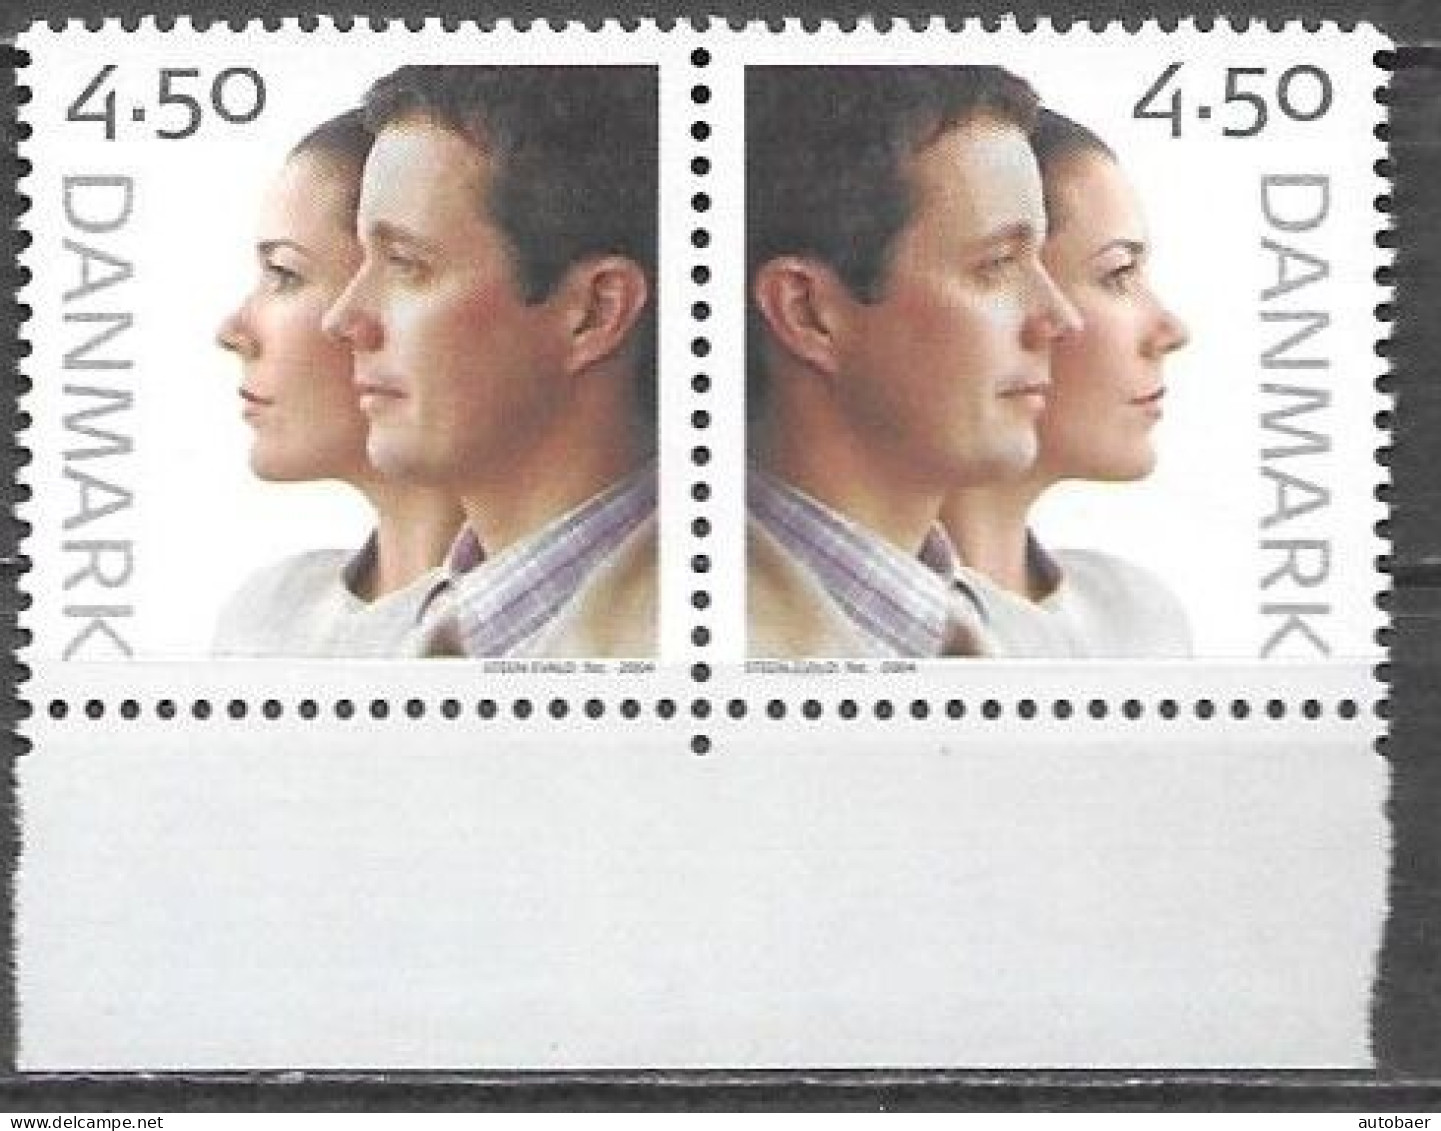 Denmark Danmark Dänemark 2004 Royal Wedding Frederik Mary Mi. No. 1370+1369 Pair ** MNH Postfr. Very Rare This Pair !! - Unused Stamps